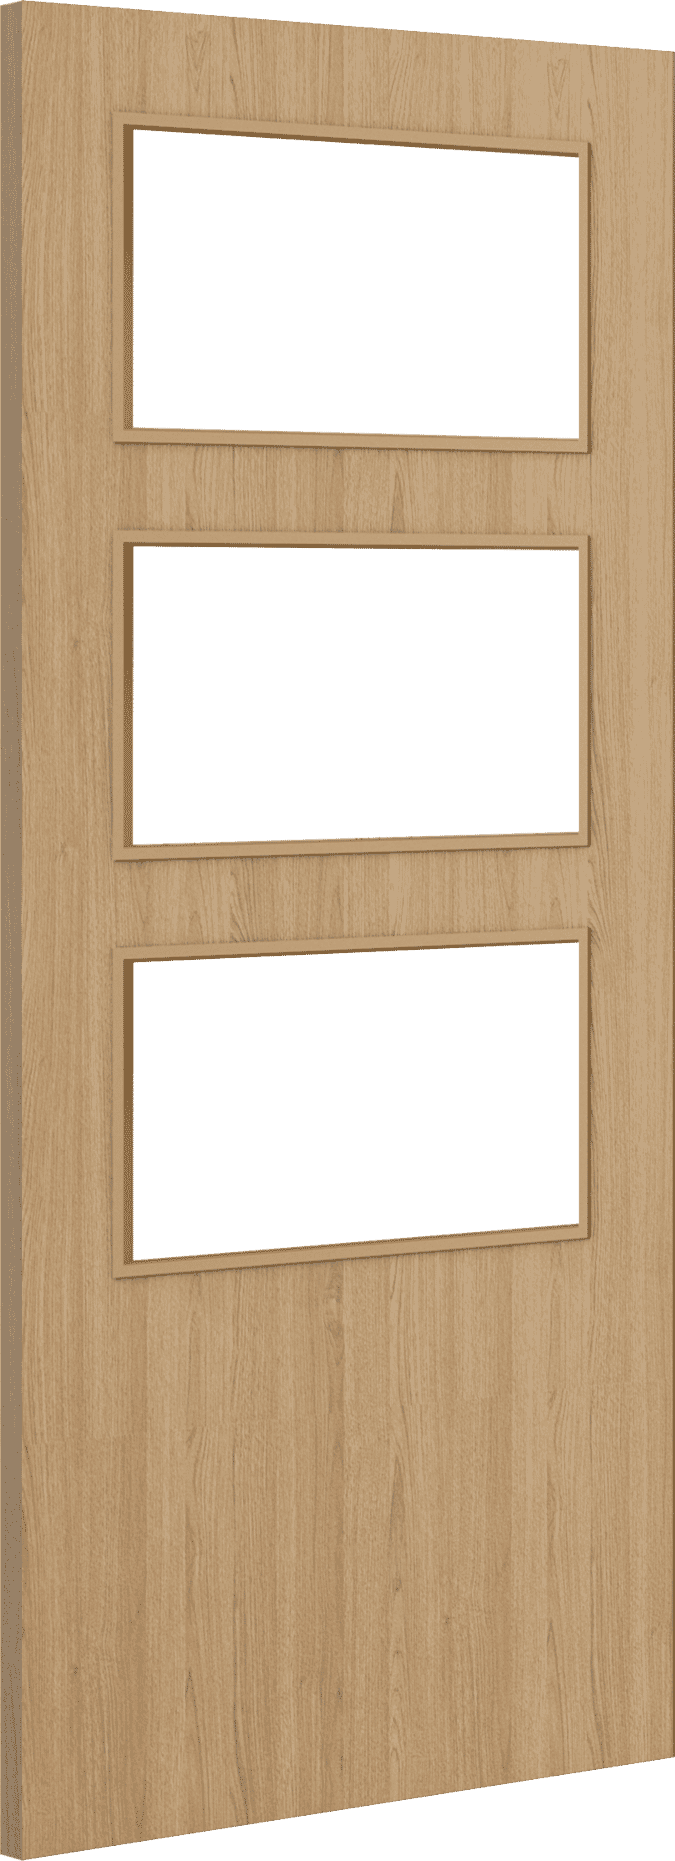 1981mm x 762mm x 44mm (30") Architectural Oak 03 Clear Glazed - Prefinished FD30 Fire Door Blank